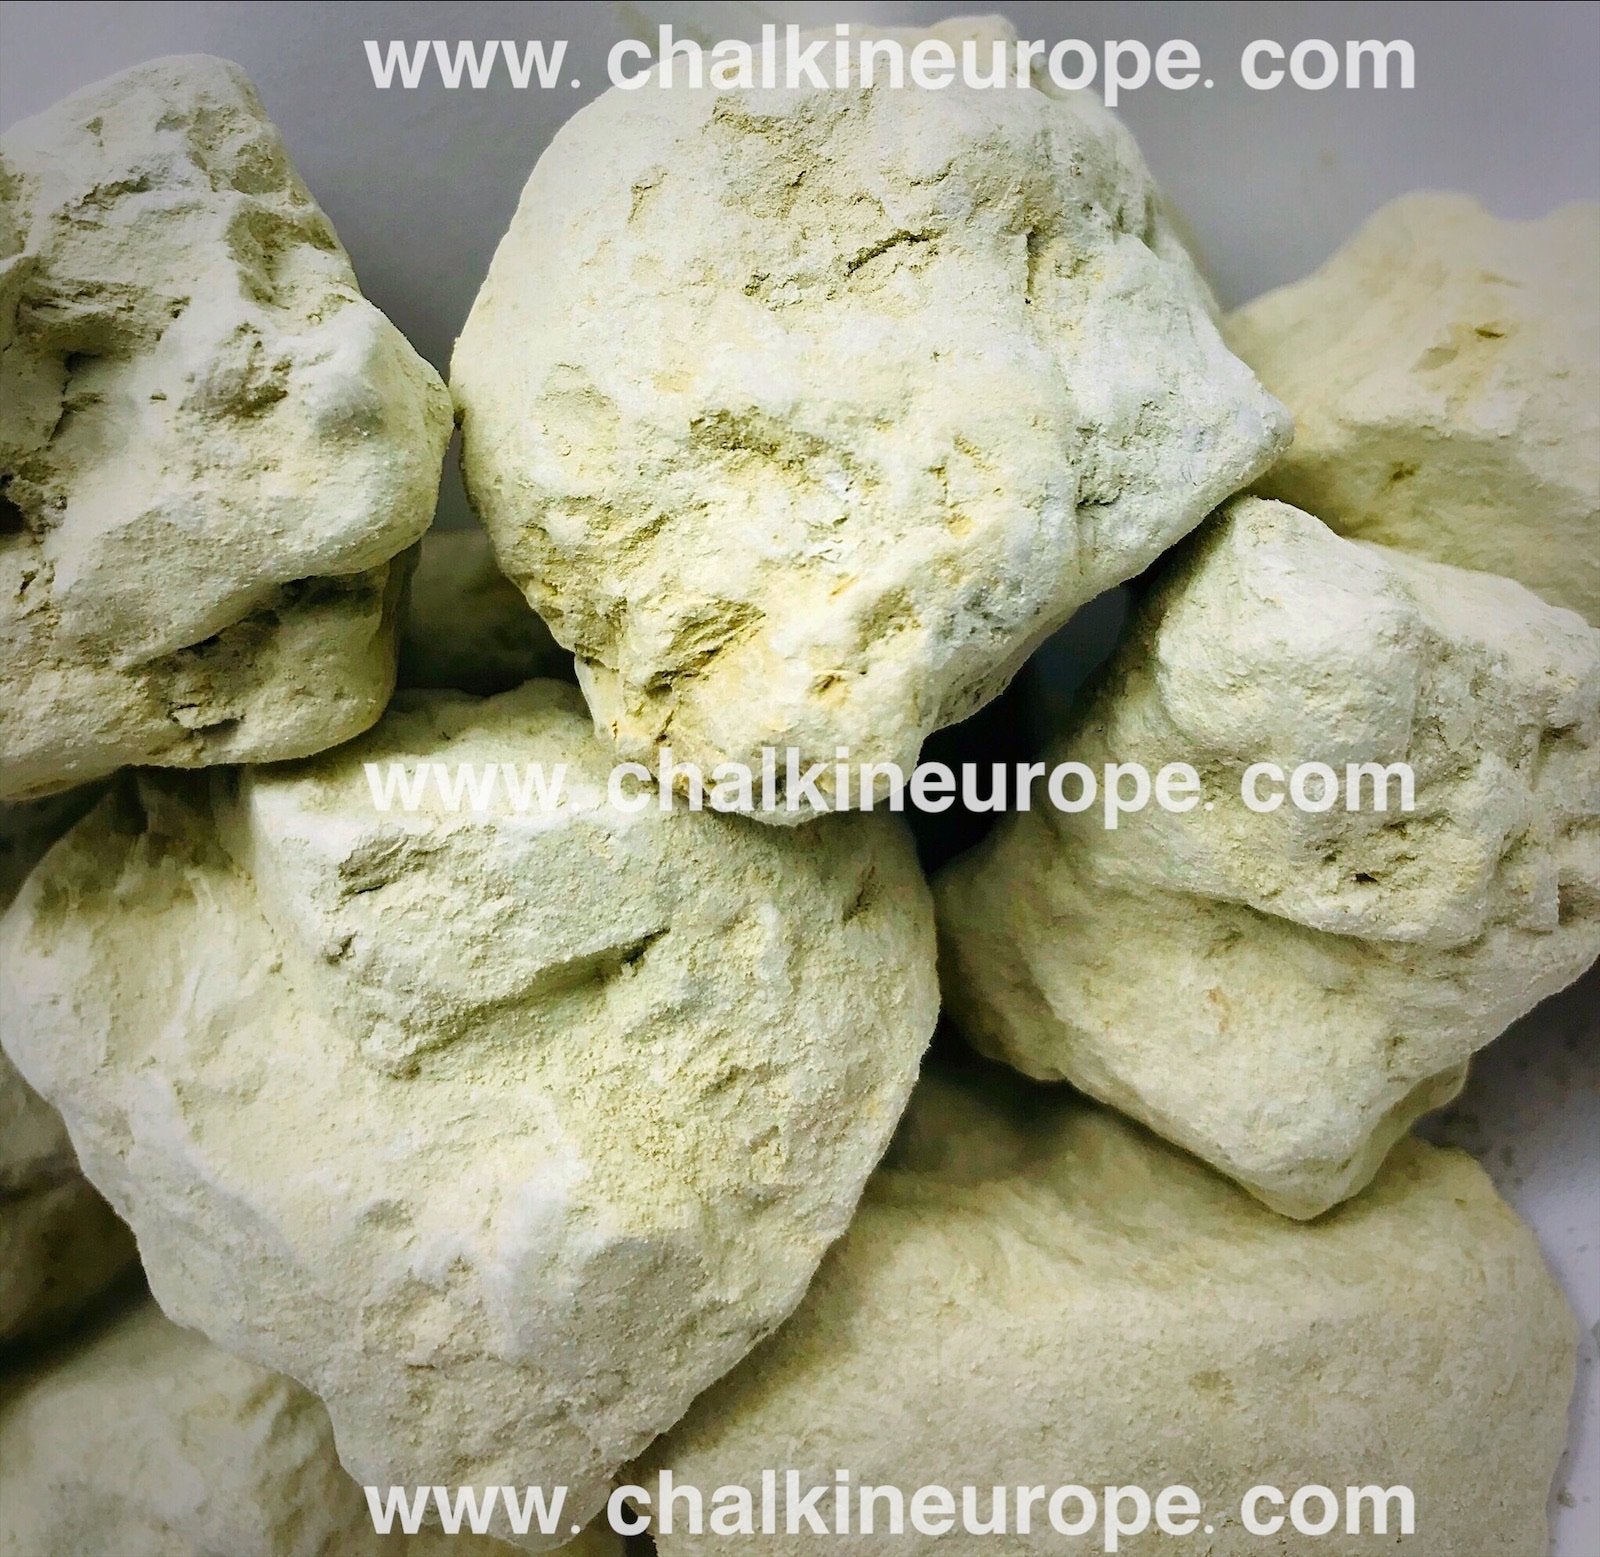 Kamieļu māls - Chalkineurope